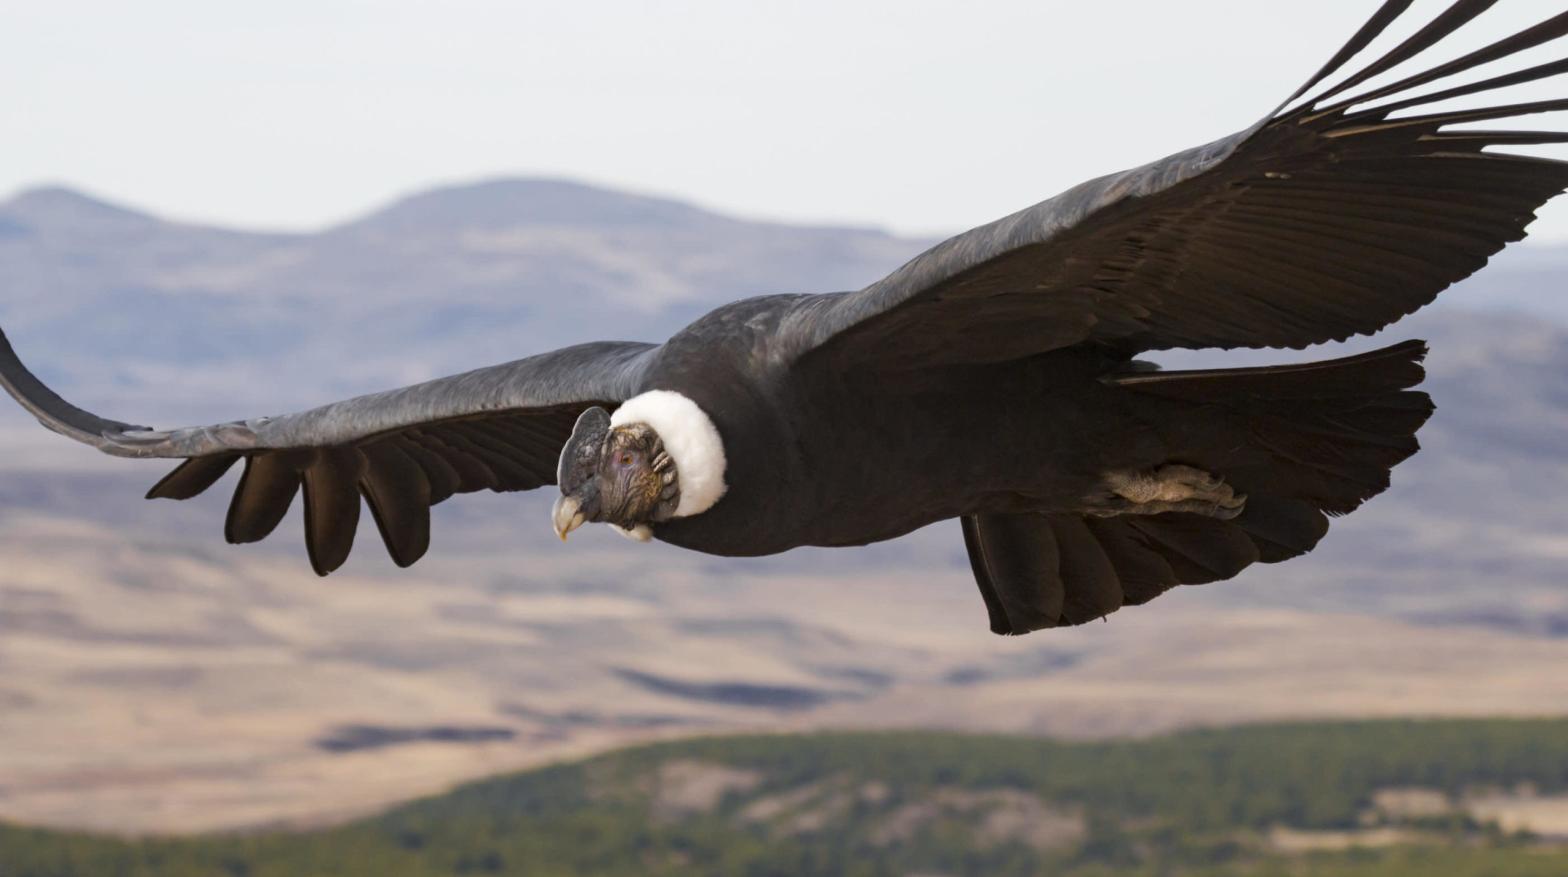 An Andean condor. (Image: Facundo Vital)